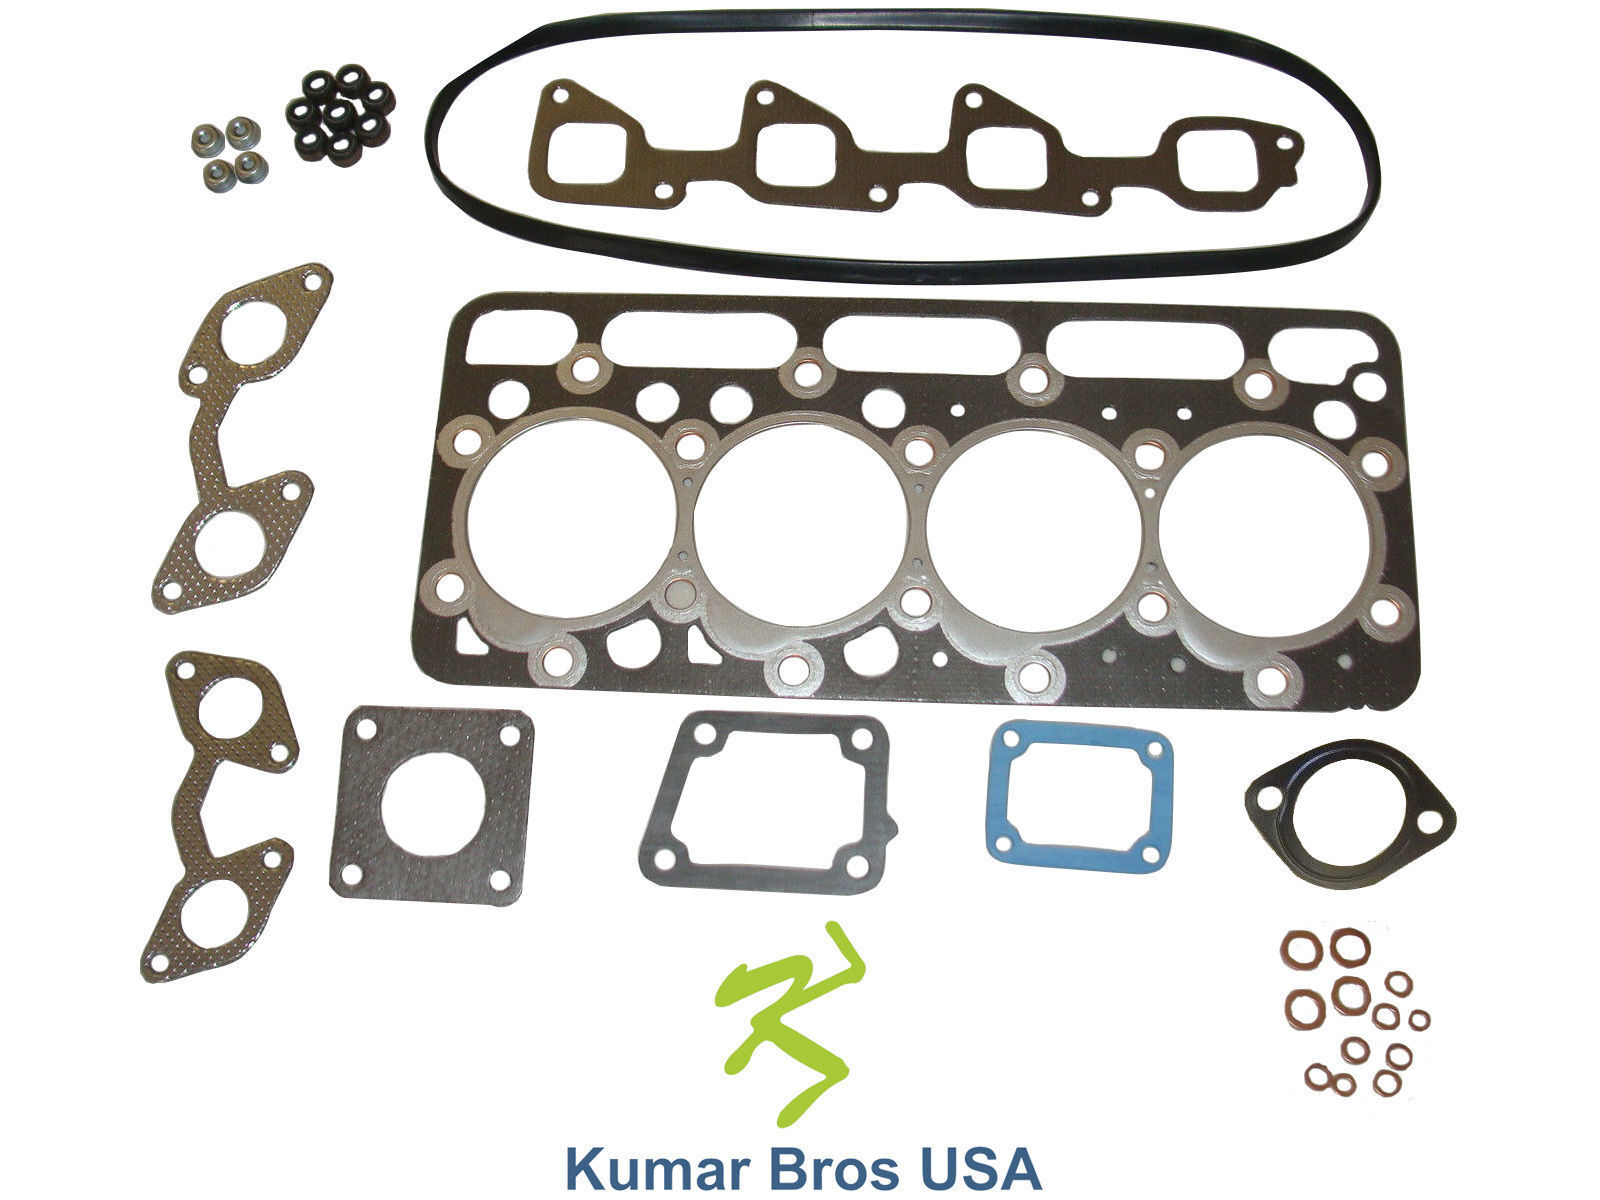 New Kumar Bros USA Upper Gasket Kit FITS BOBCAT 773 “KUBOTA V220